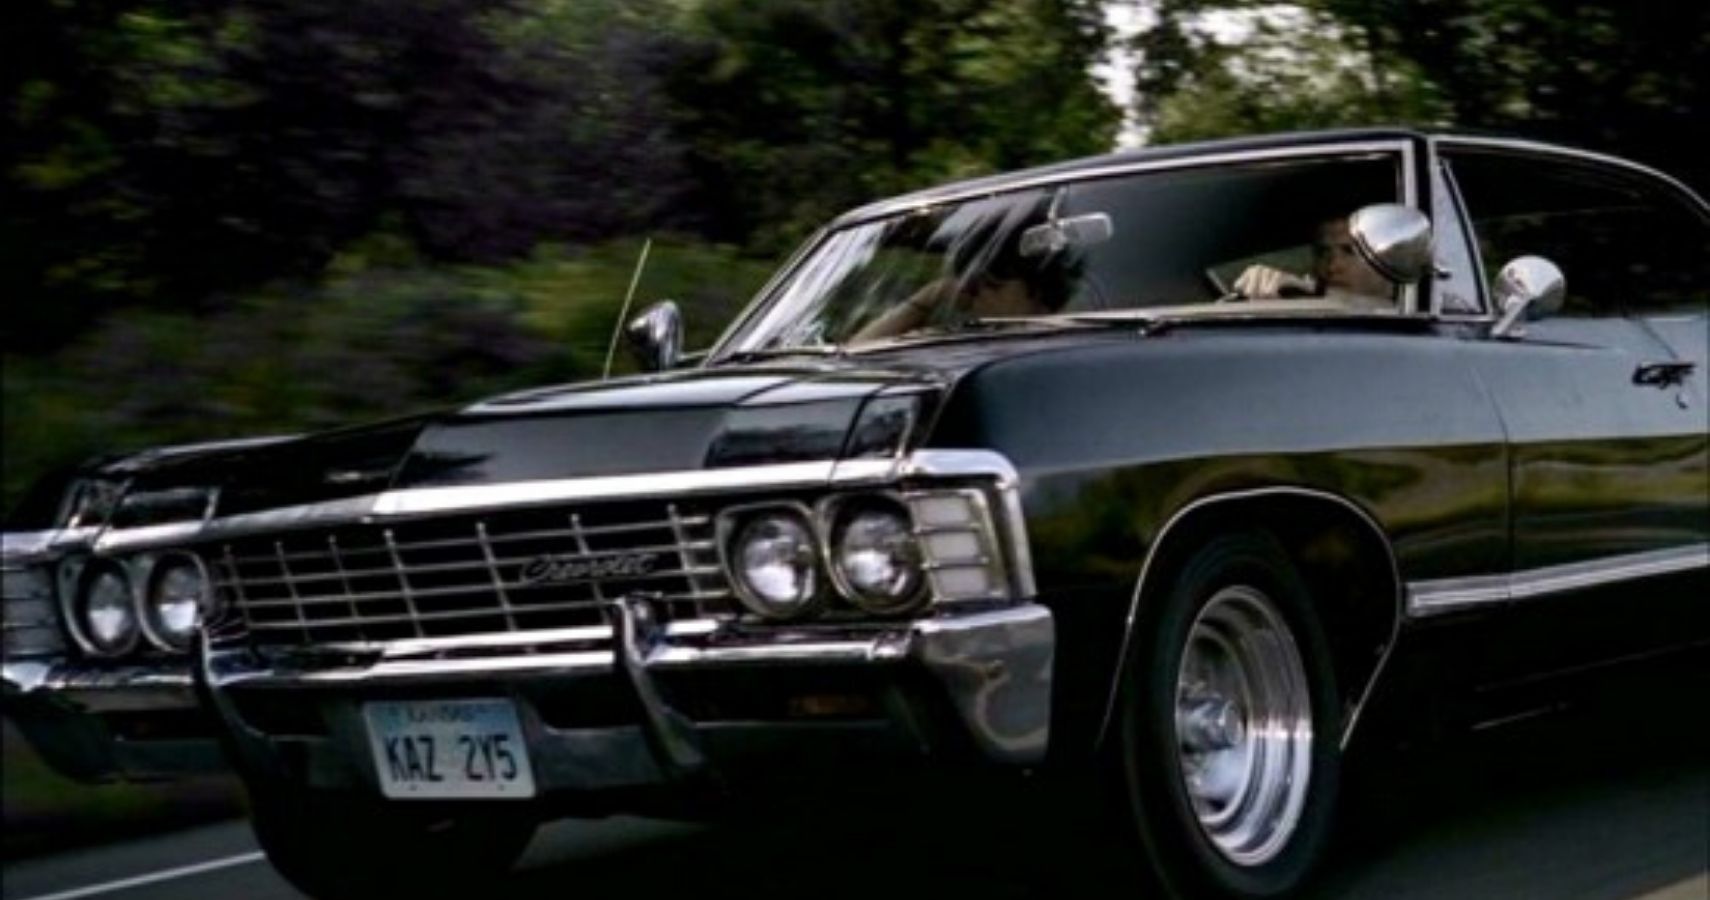 Baby: The Supernatural Impala 